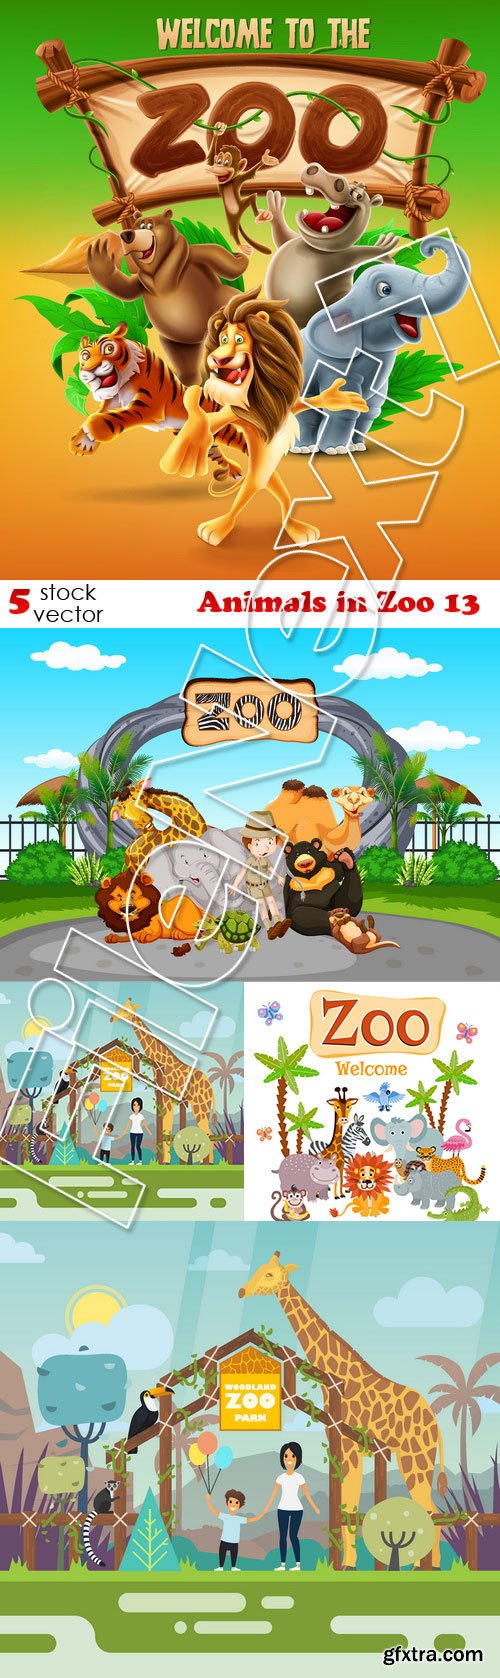 Vectors - Animals in Zoo 13